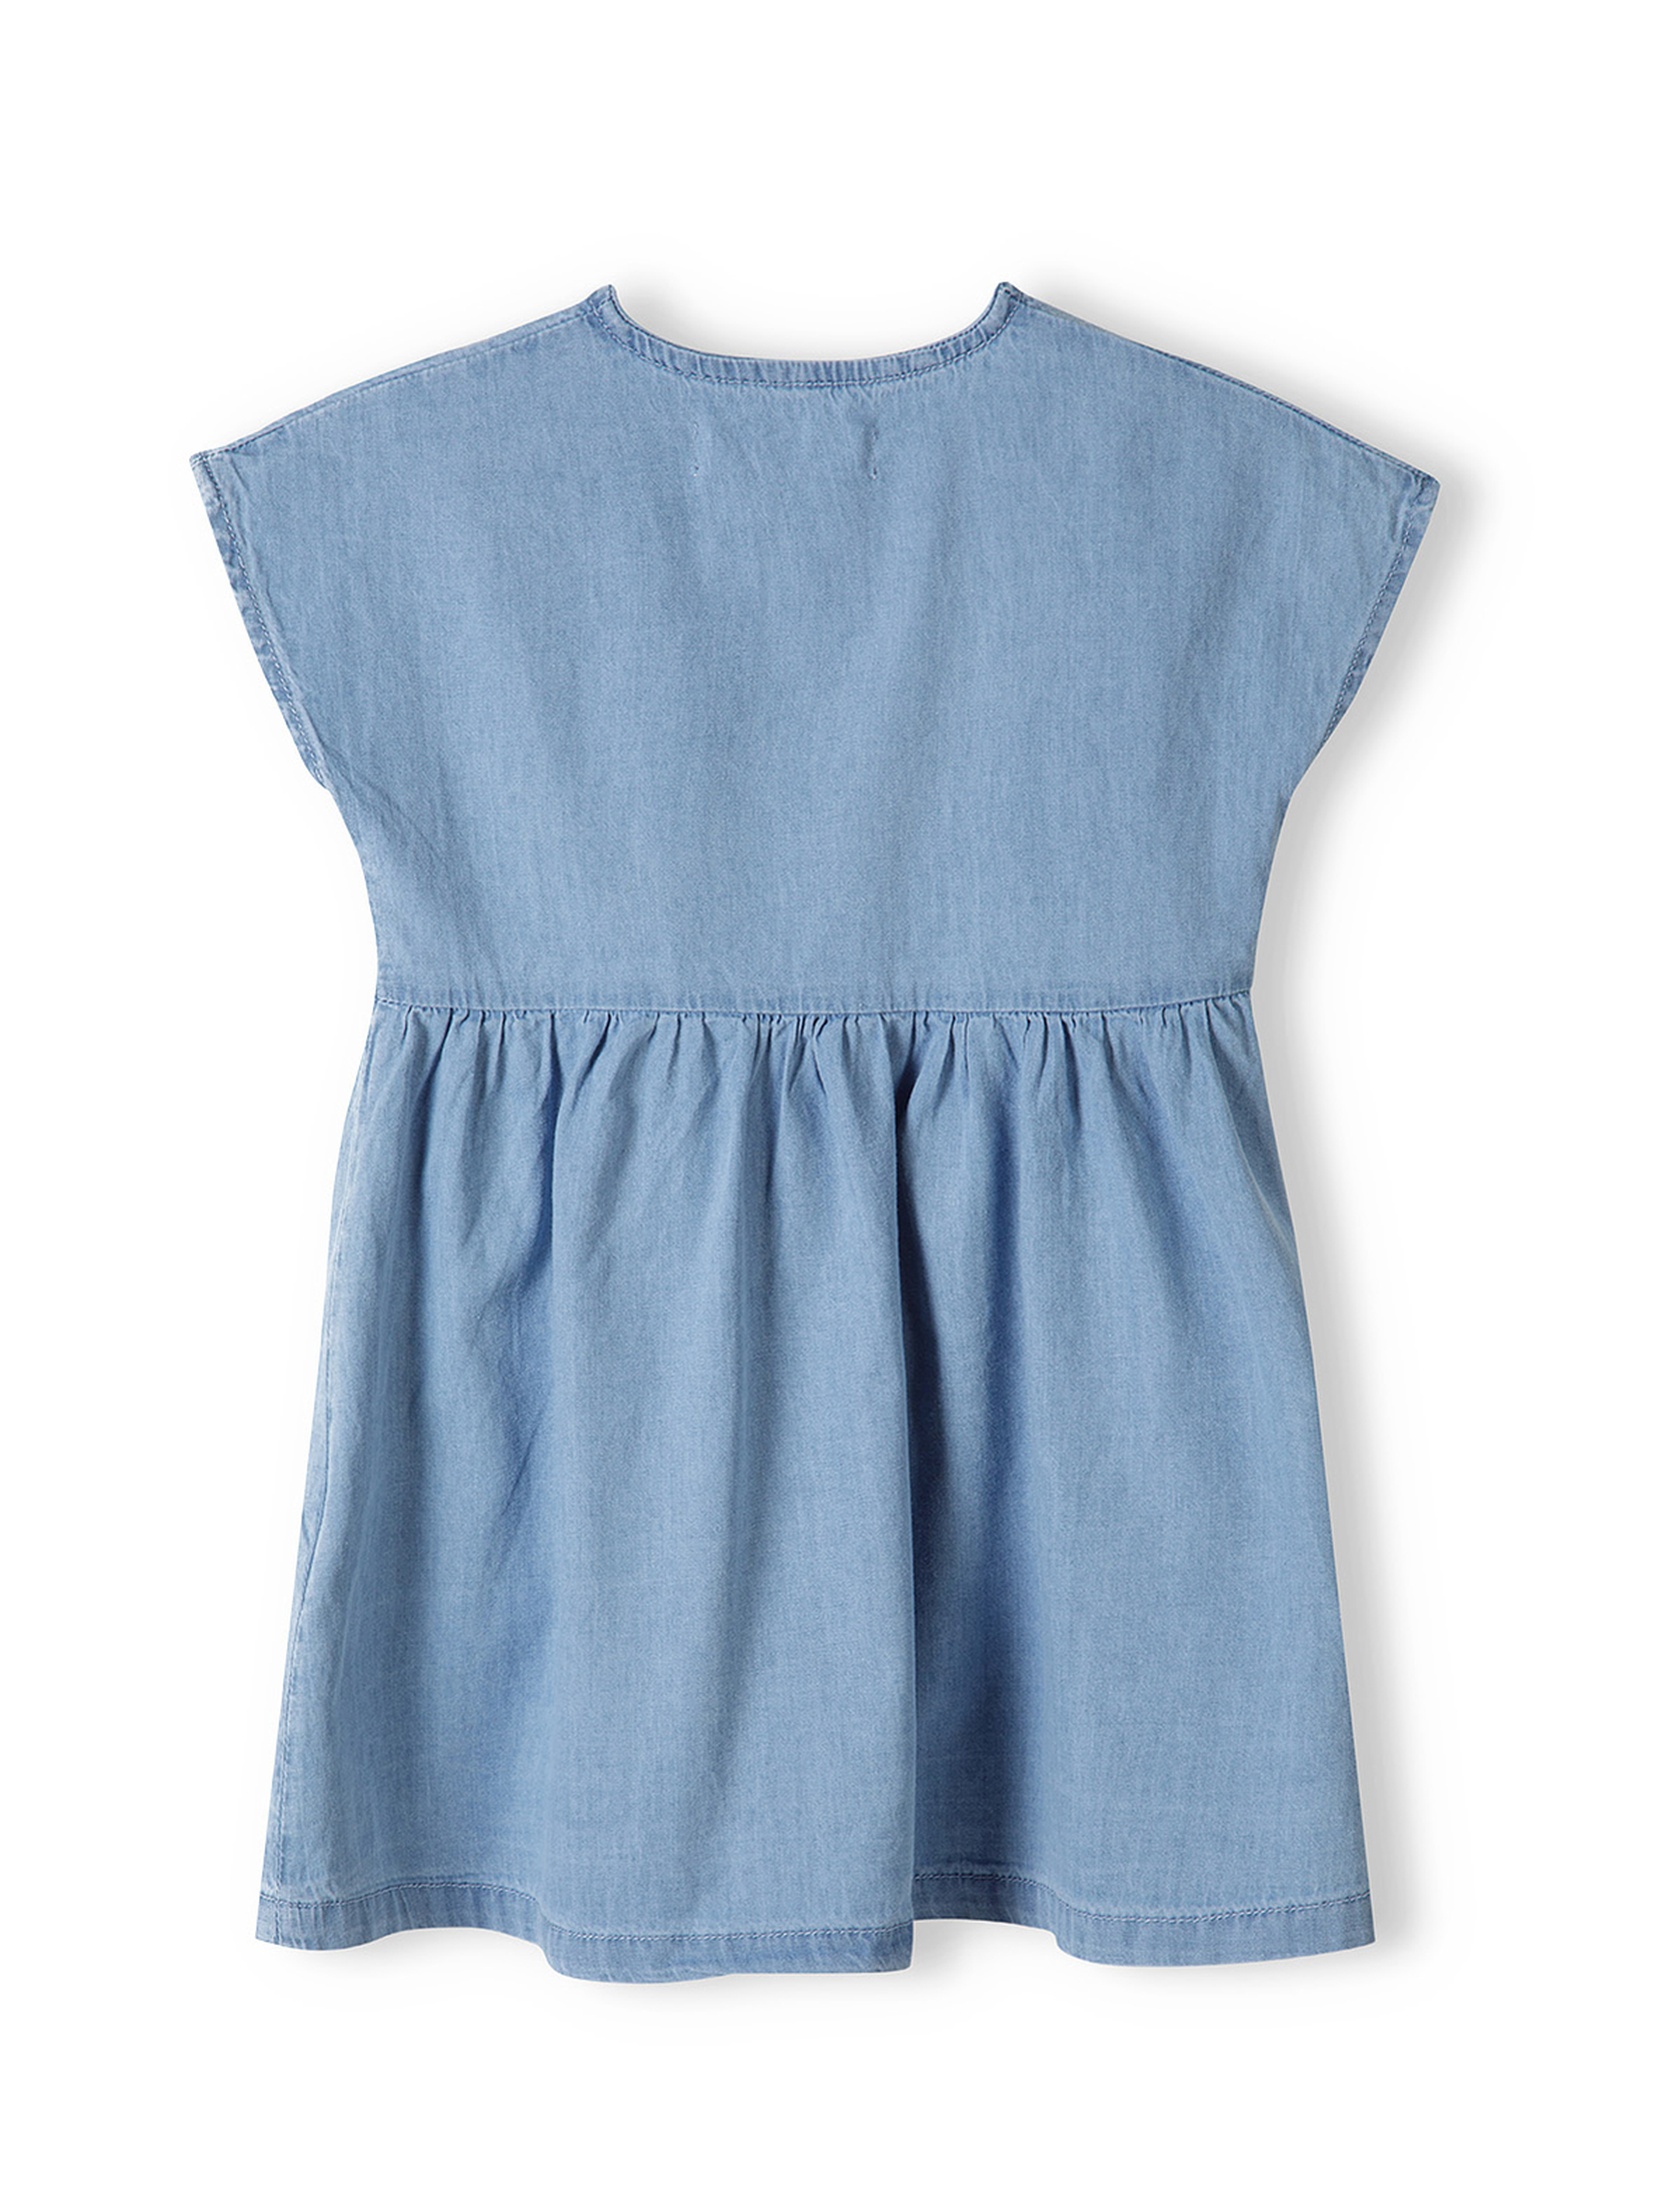 Niebieska sukienka niemowlęca z bawełny z krótkim rękawem